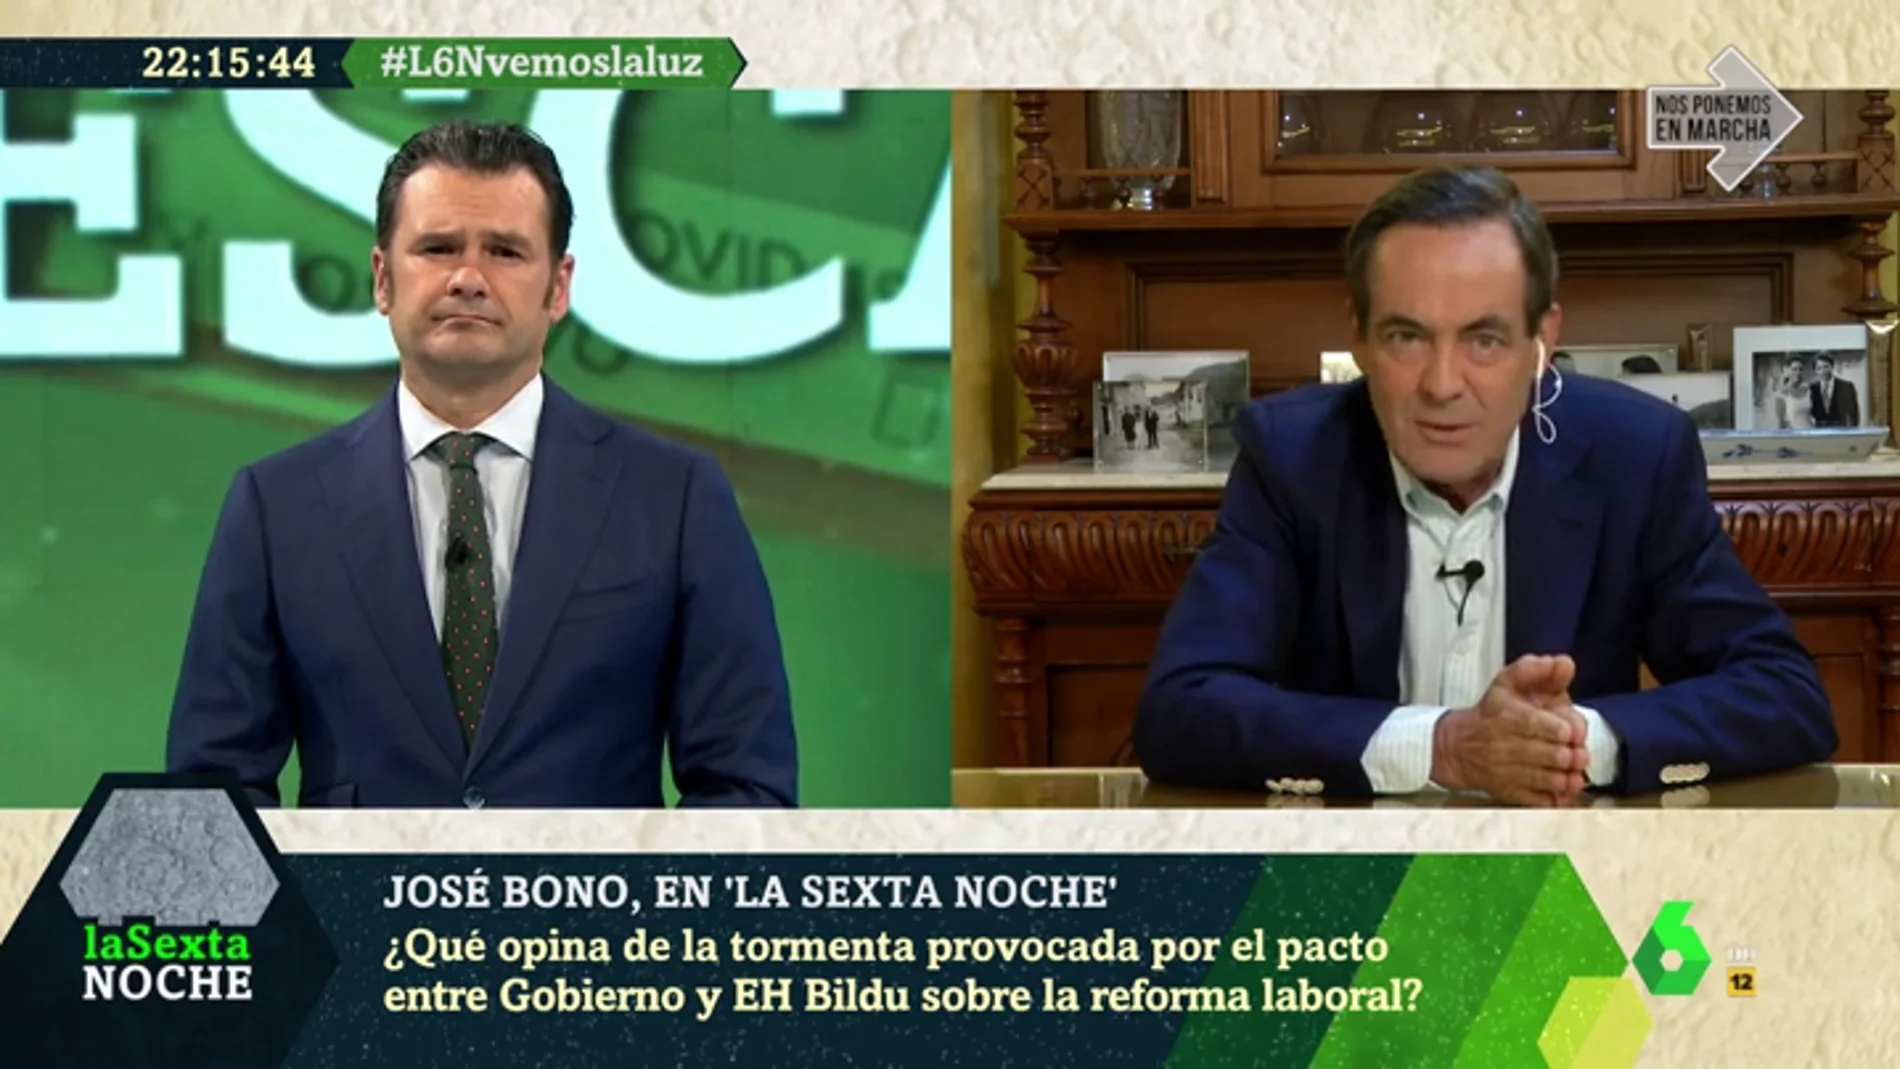 José Bono: "Sánchez no conocía el pacto de la reforma laboral, ni sus términos ni que se había firmado"